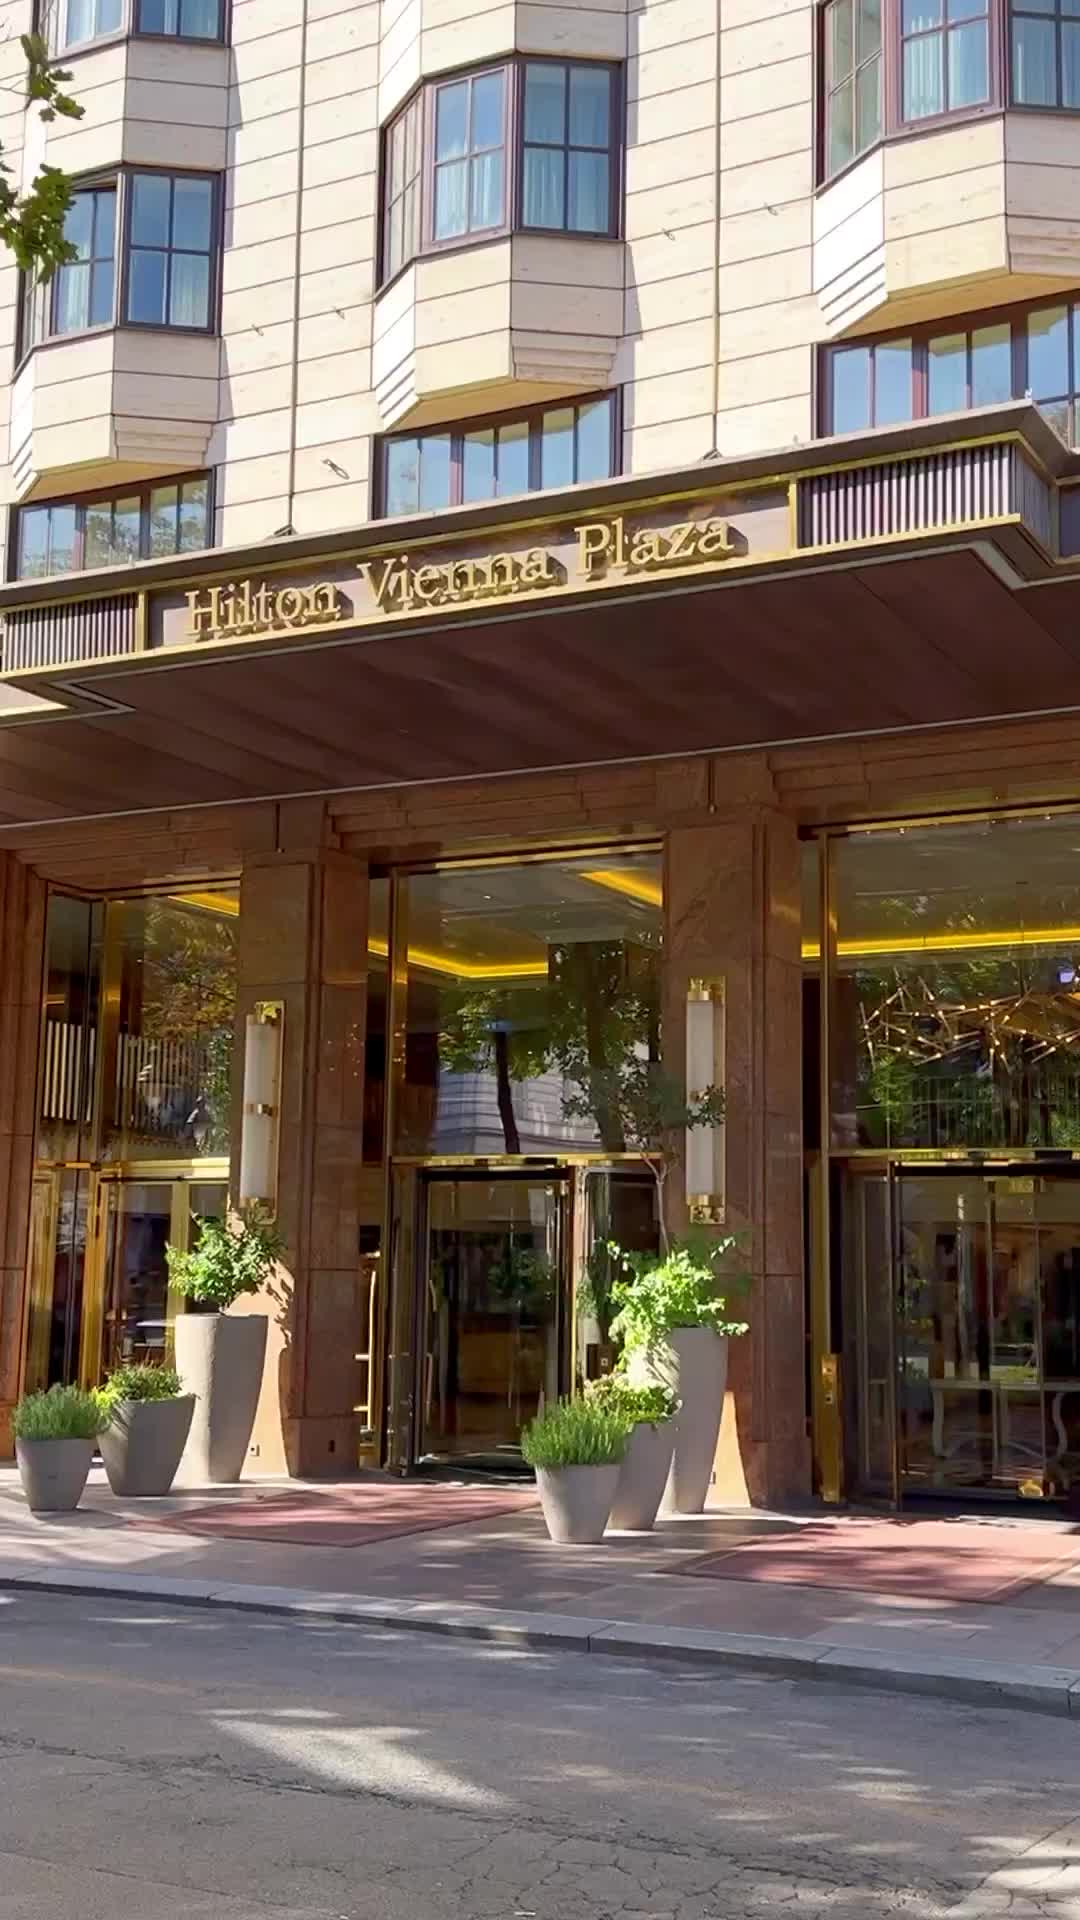 Elegant 5-Star Hotel in Vienna | Hilton Vienna Plaza